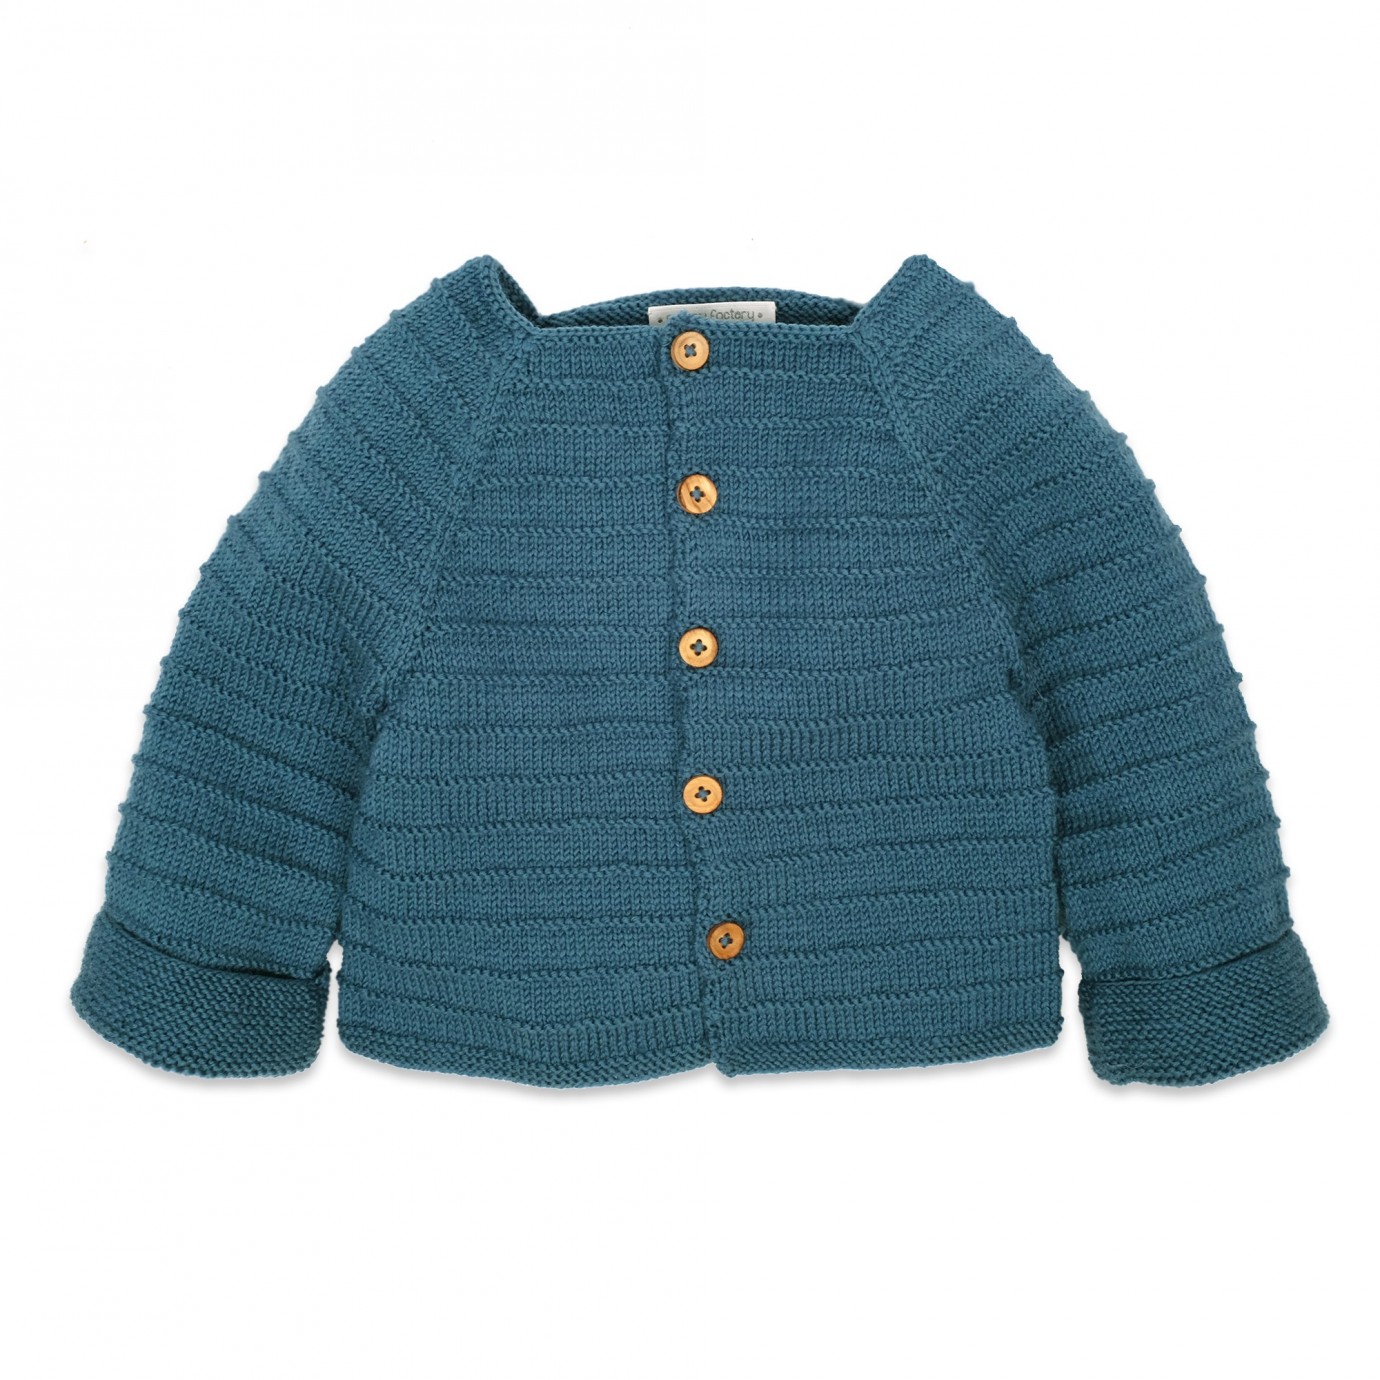 Sélection de tricot gilet bébé facile gratuit - Les triconautes